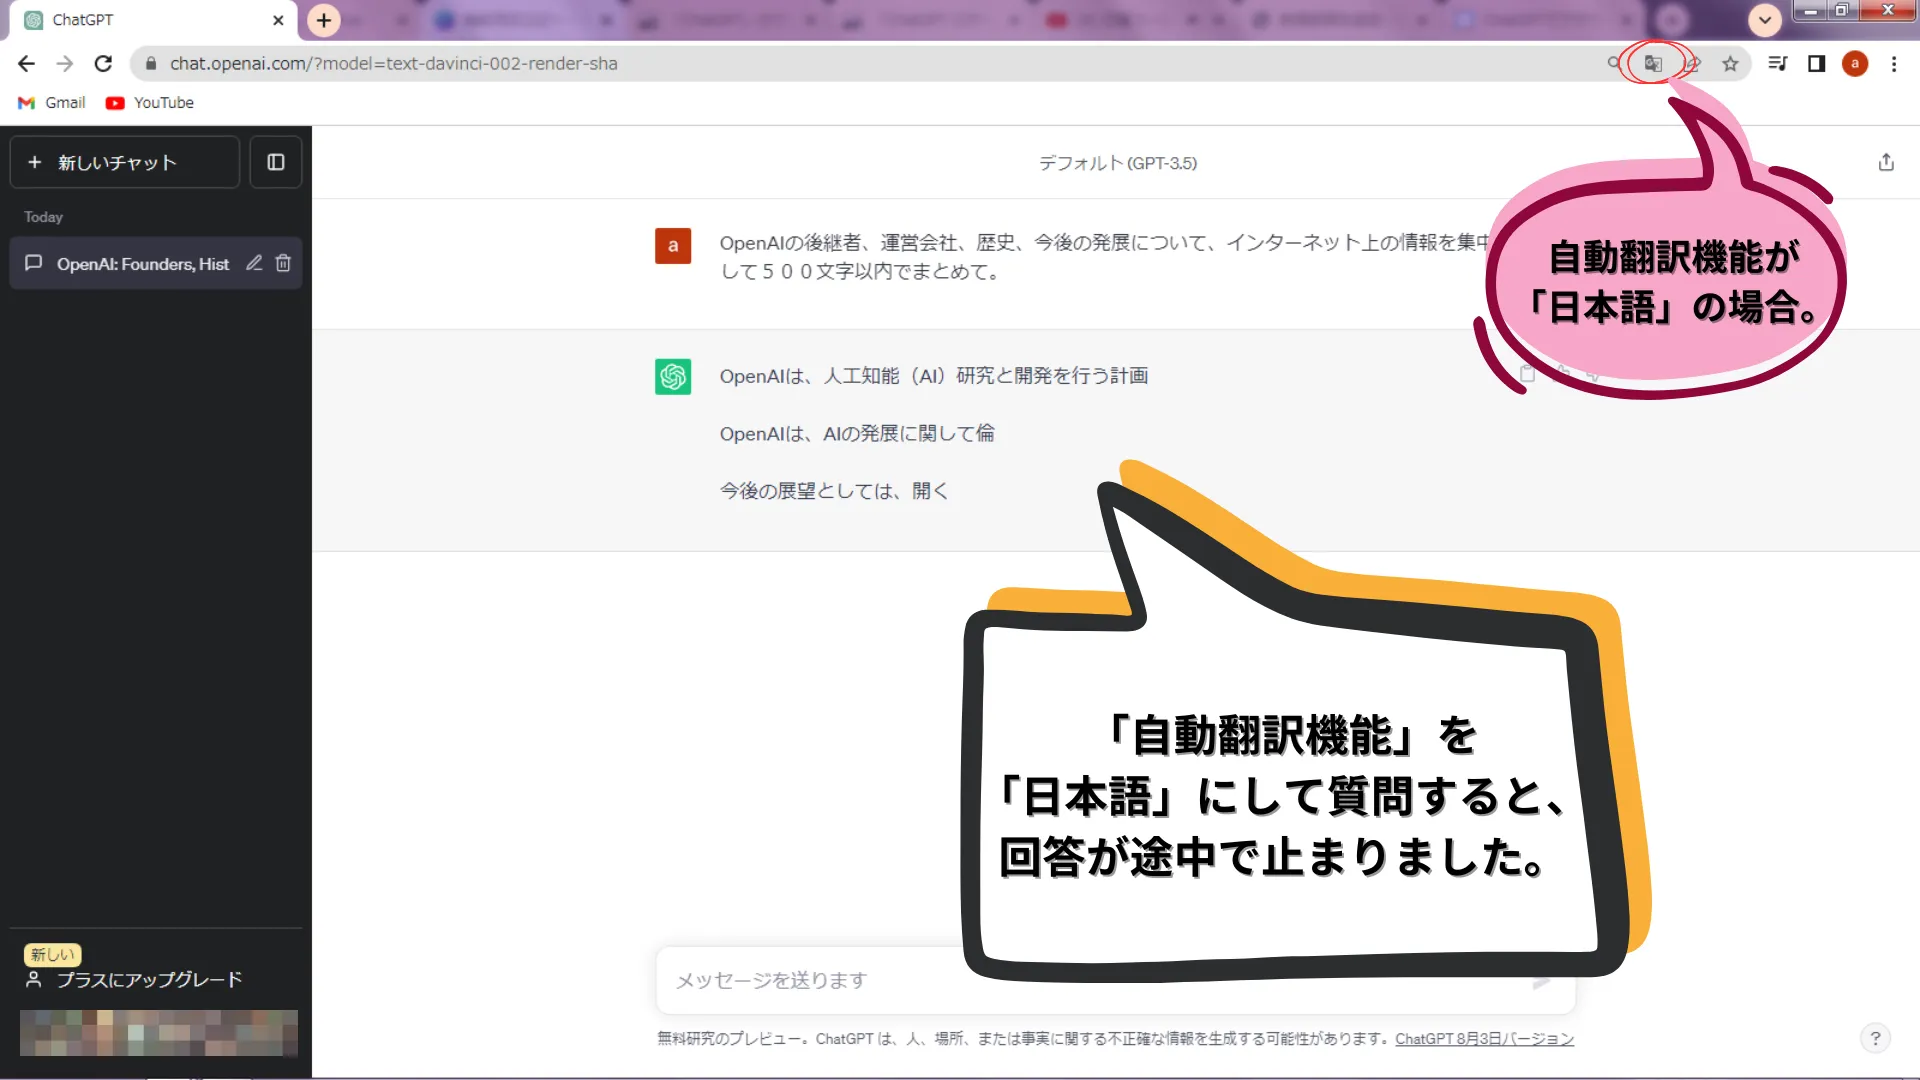 自動翻訳機能を「日本語」に設定していると、回答が途中で止まりました。